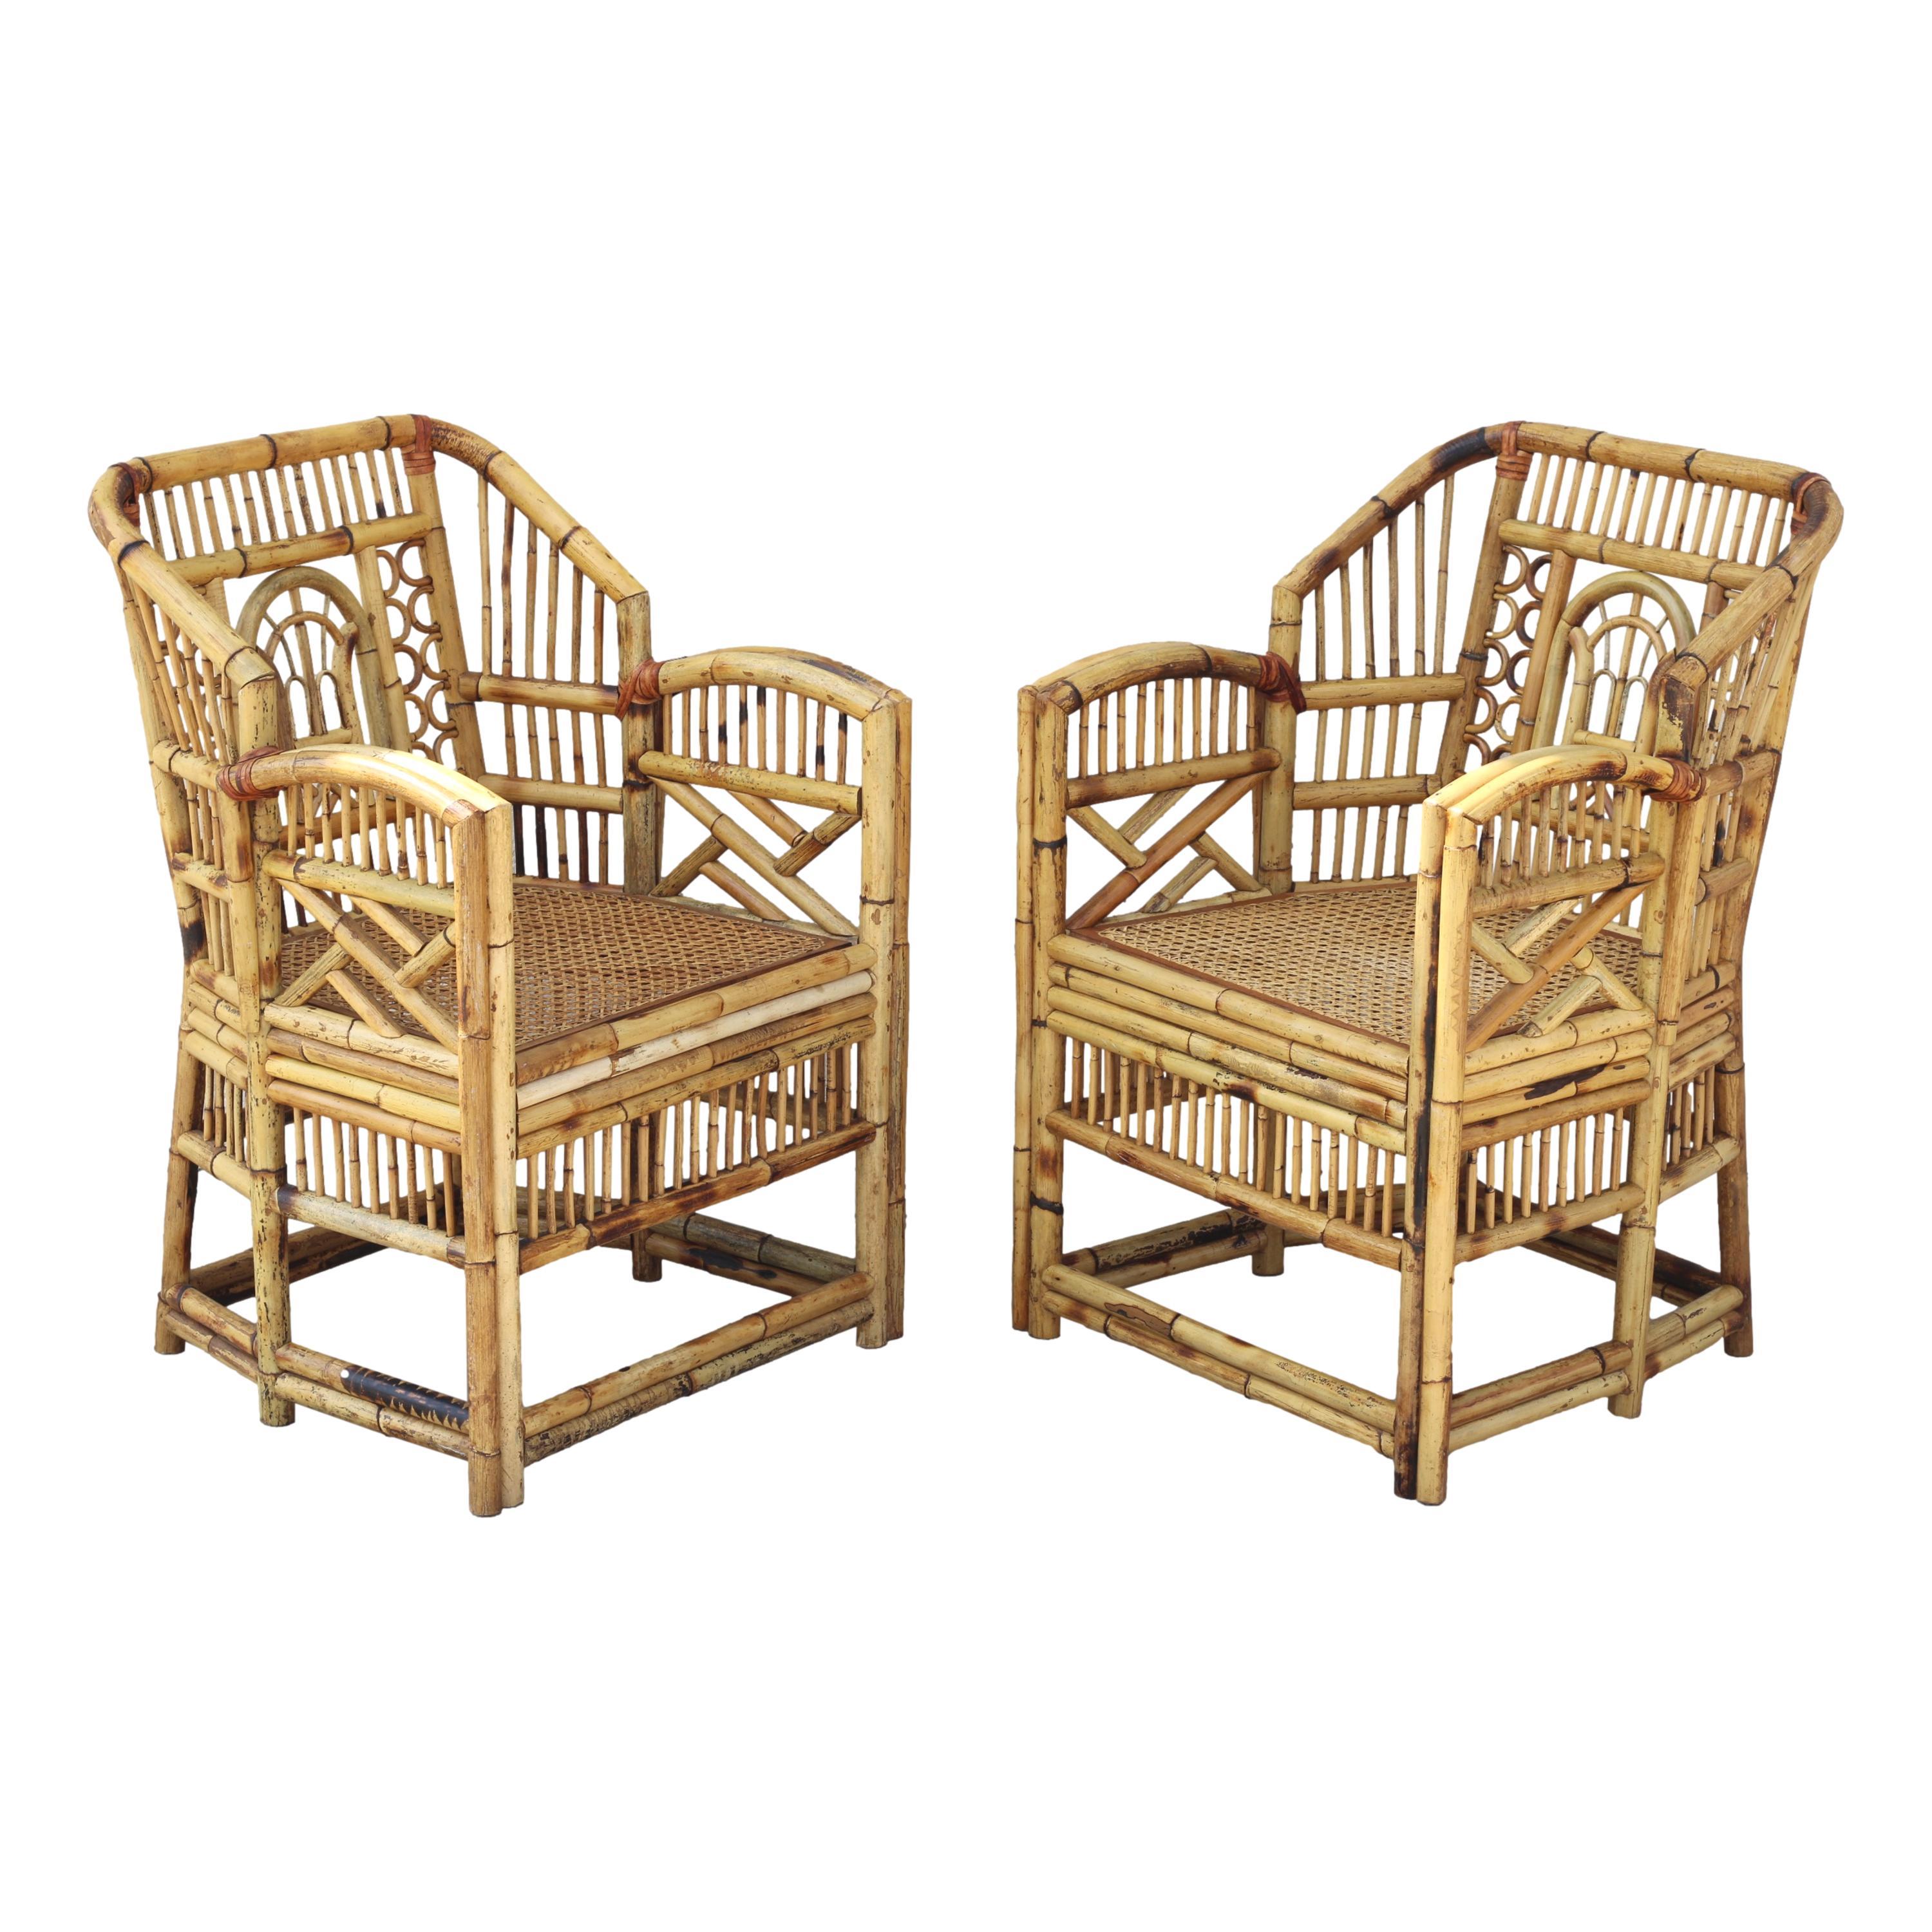 Fabelhafter Satz von vier Bambus-Esssesseln im Brighton-Stil, um 1970.  Diese handgefertigten chinesischen Chippendale-Stühle verfügen über Sitze mit Rohrboden, offene Laubsägearbeiten aus Bambus und eine Oberfläche aus gebranntem Bambus mit einer